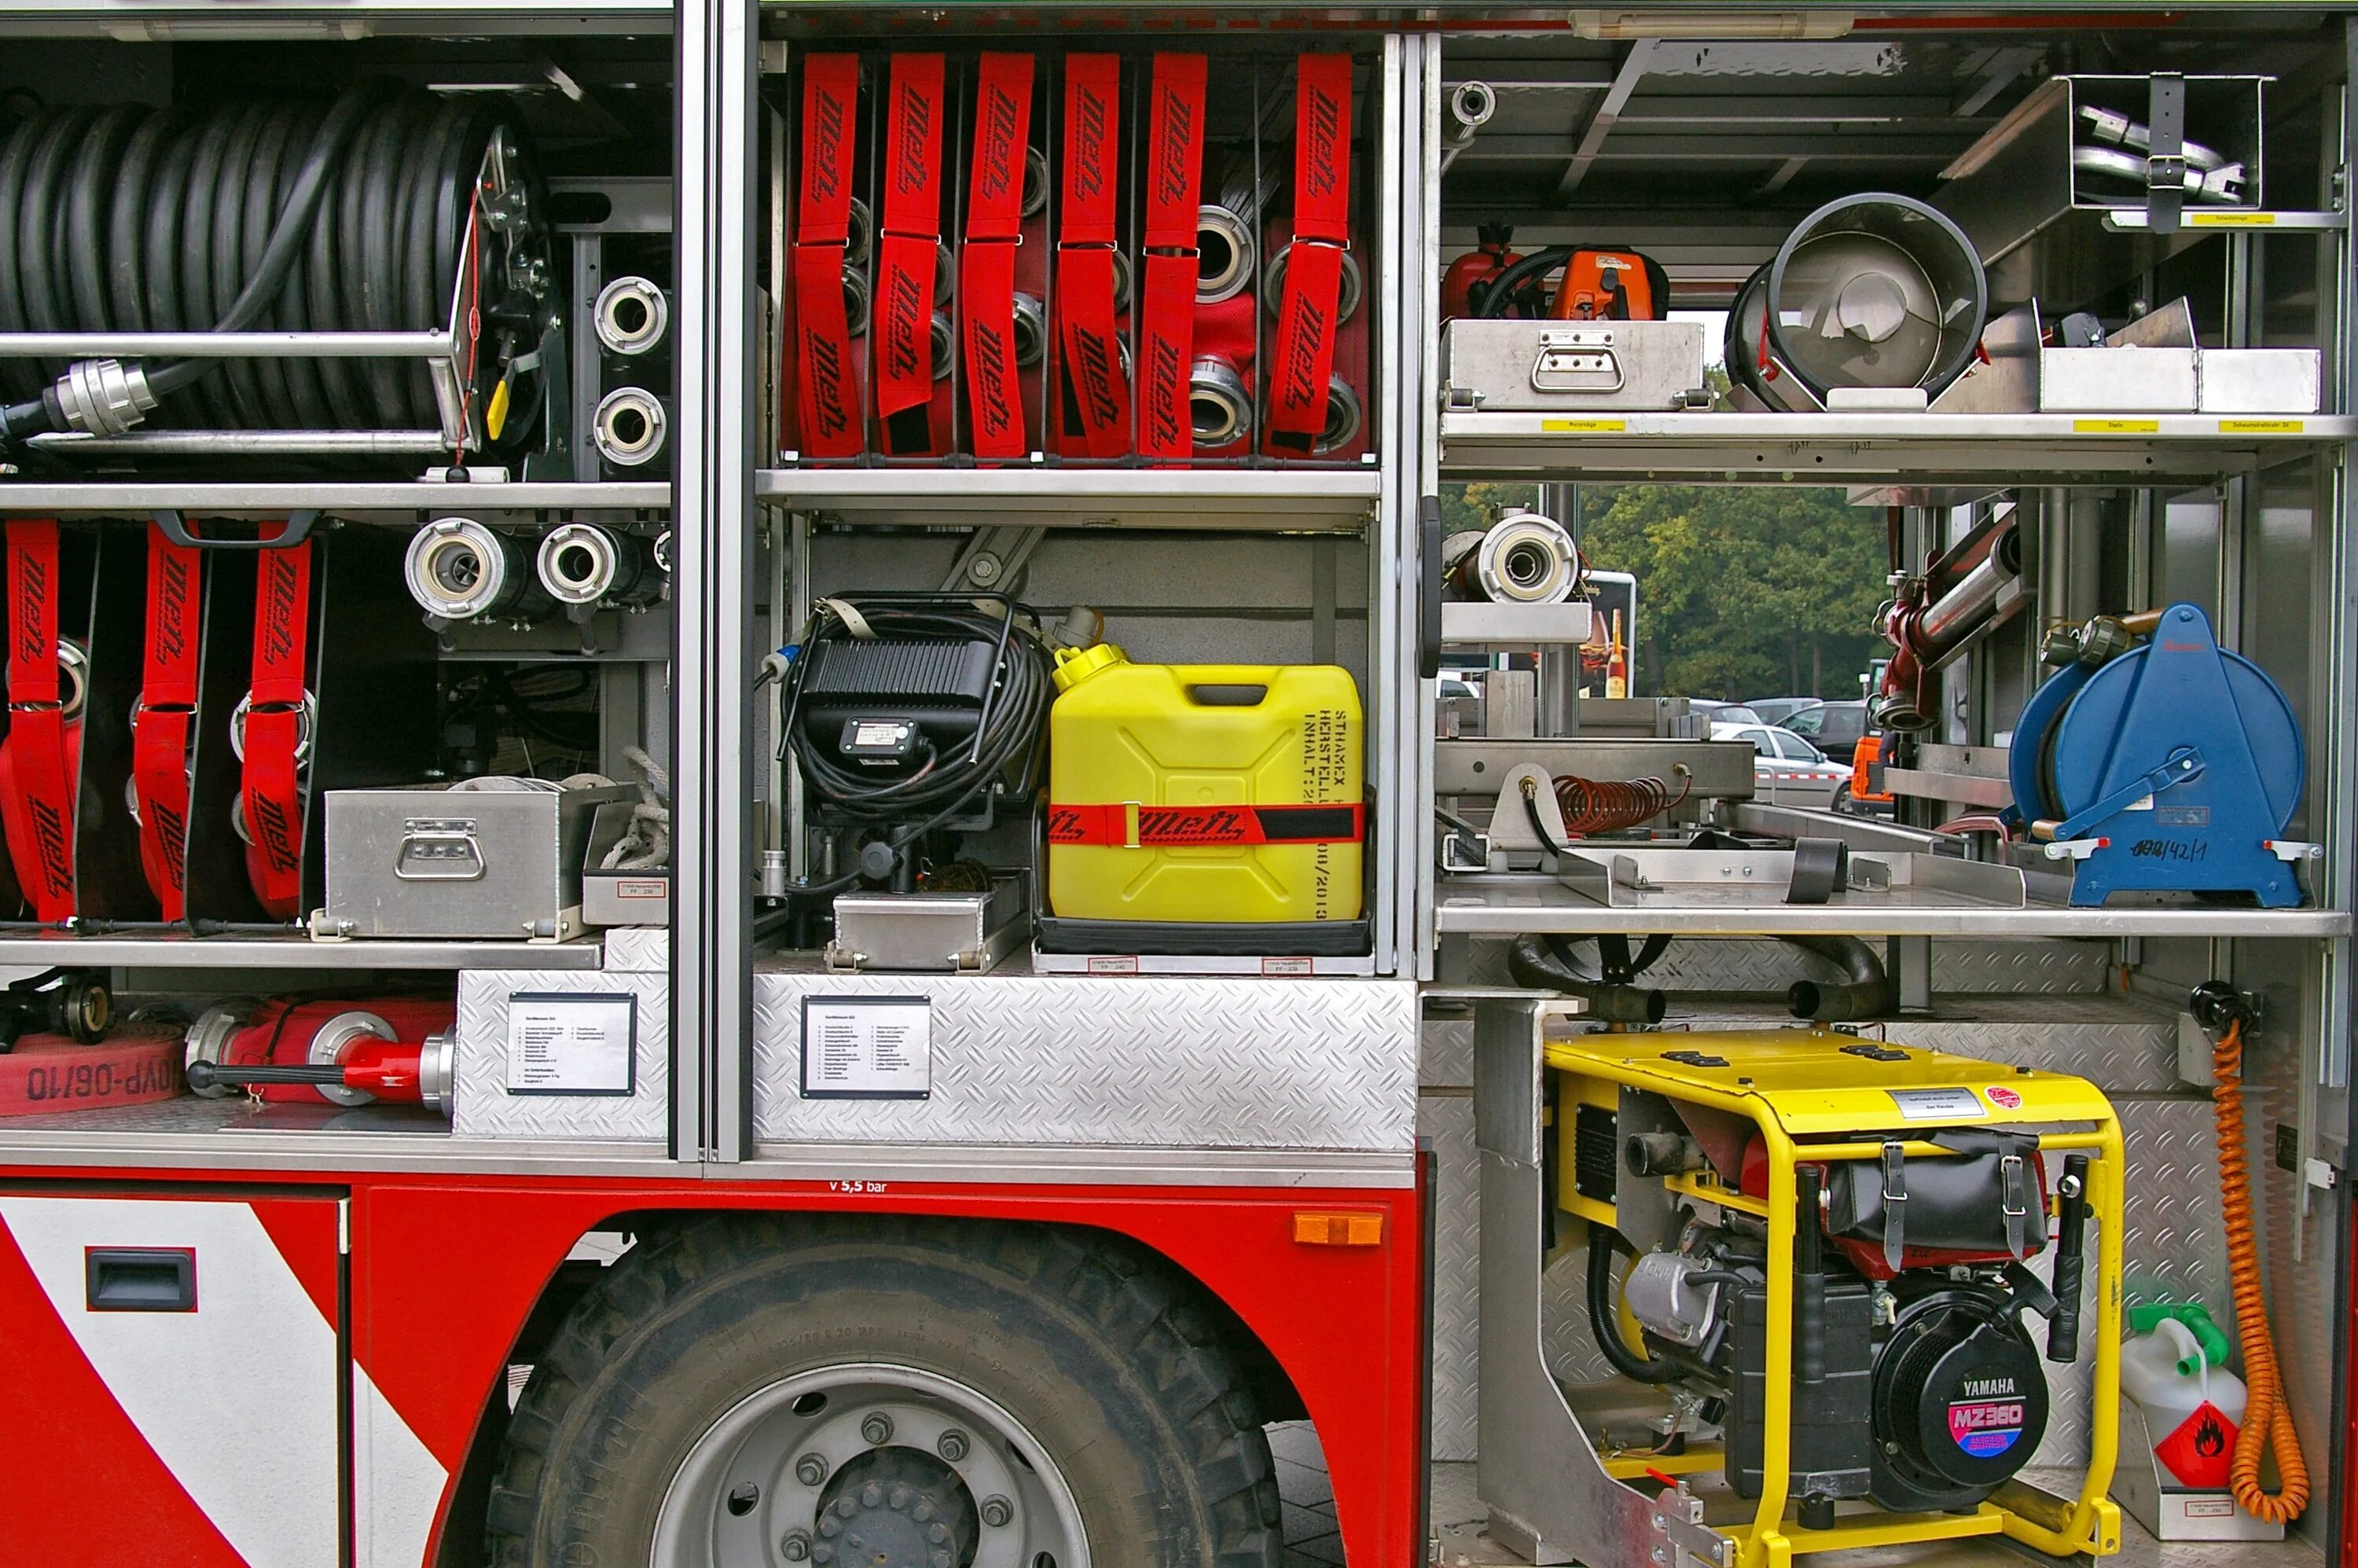 ПТВ пожарной машины. ПТВ снаряжения для пожарной машины. Оснащение пожарного автомобиля. Пожарно-техническое вооружение и оборудование.